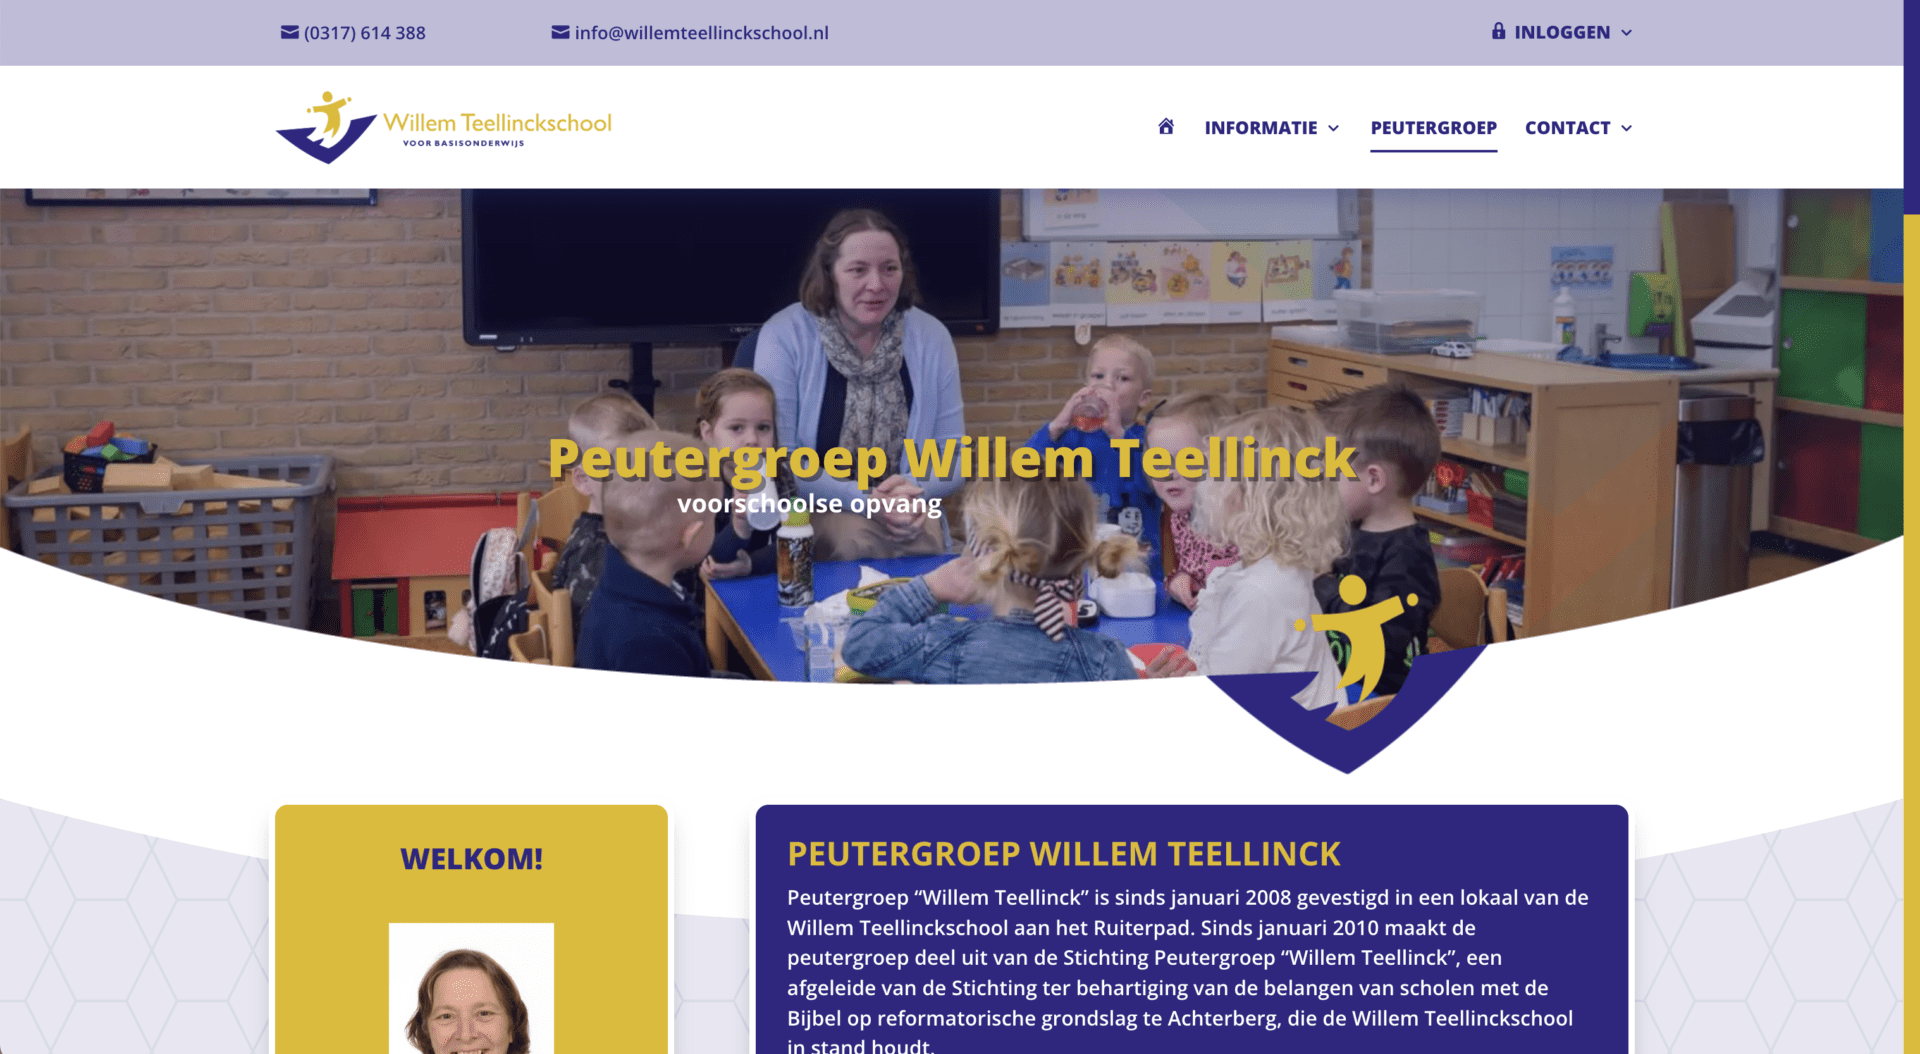 Willem Teellinckschool Achterberg website met aanmelding en informatie voor de peutergroep